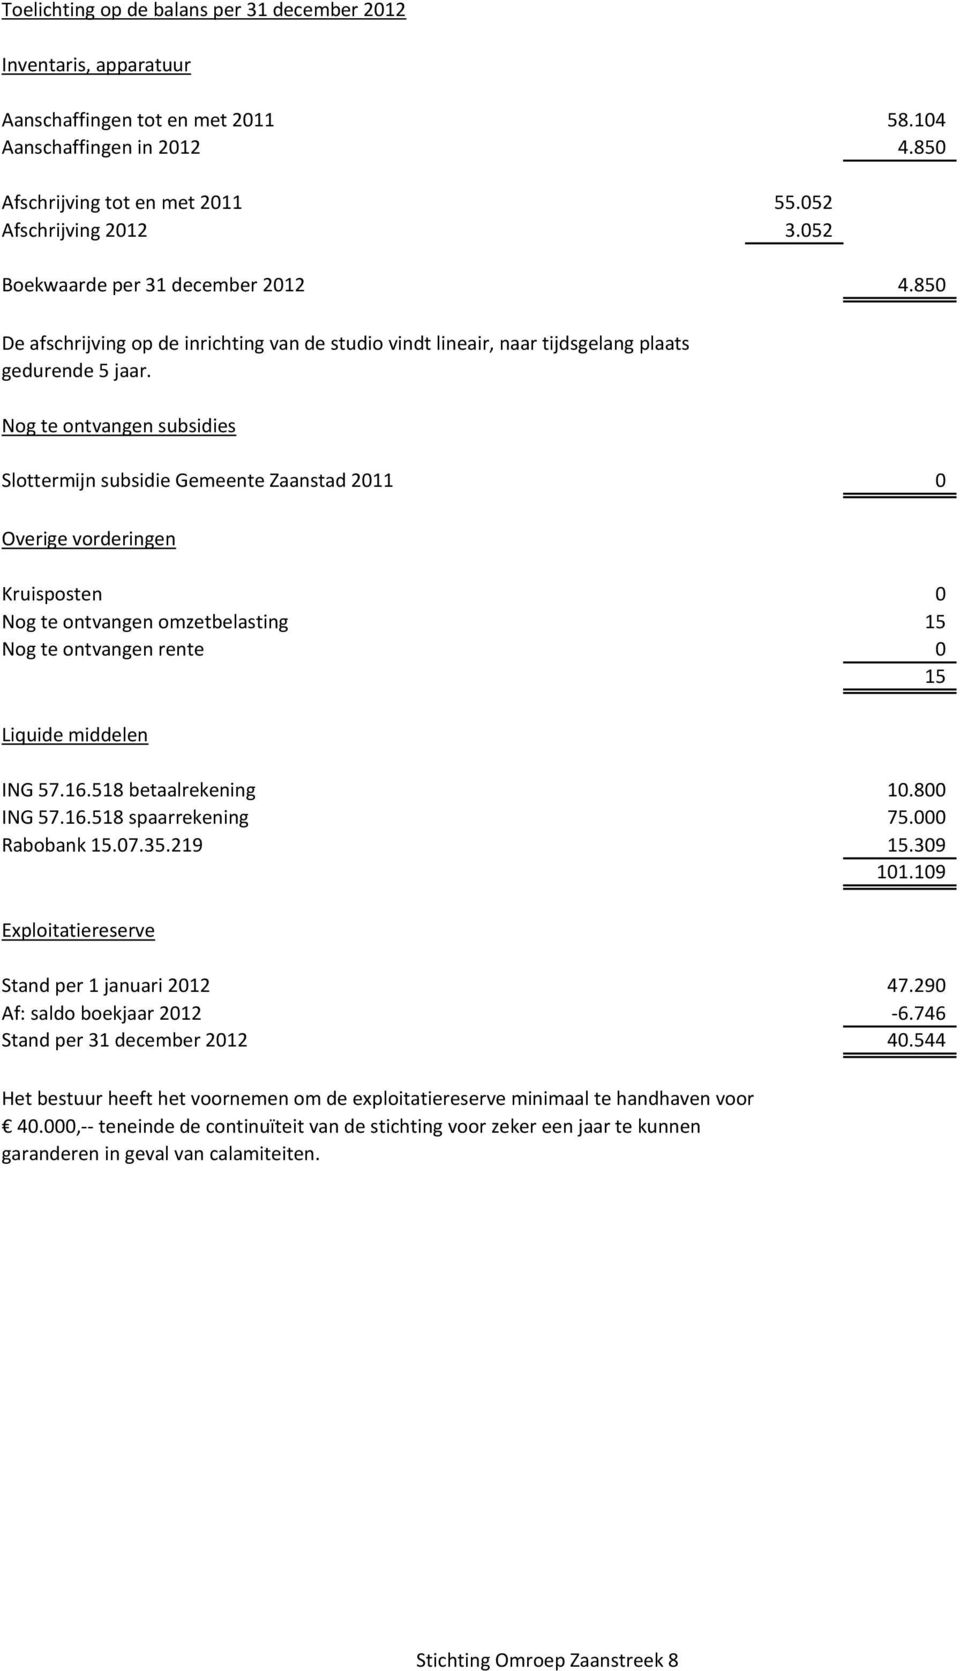 Nog te ontvangen subsidies Slottermijn subsidie Gemeente Zaanstad 2011 0 Overige vorderingen Kruisposten 0 Nog te ontvangen omzetbelasting 15 Nog te ontvangen rente 0 15 Liquide middelen ING 57.16.